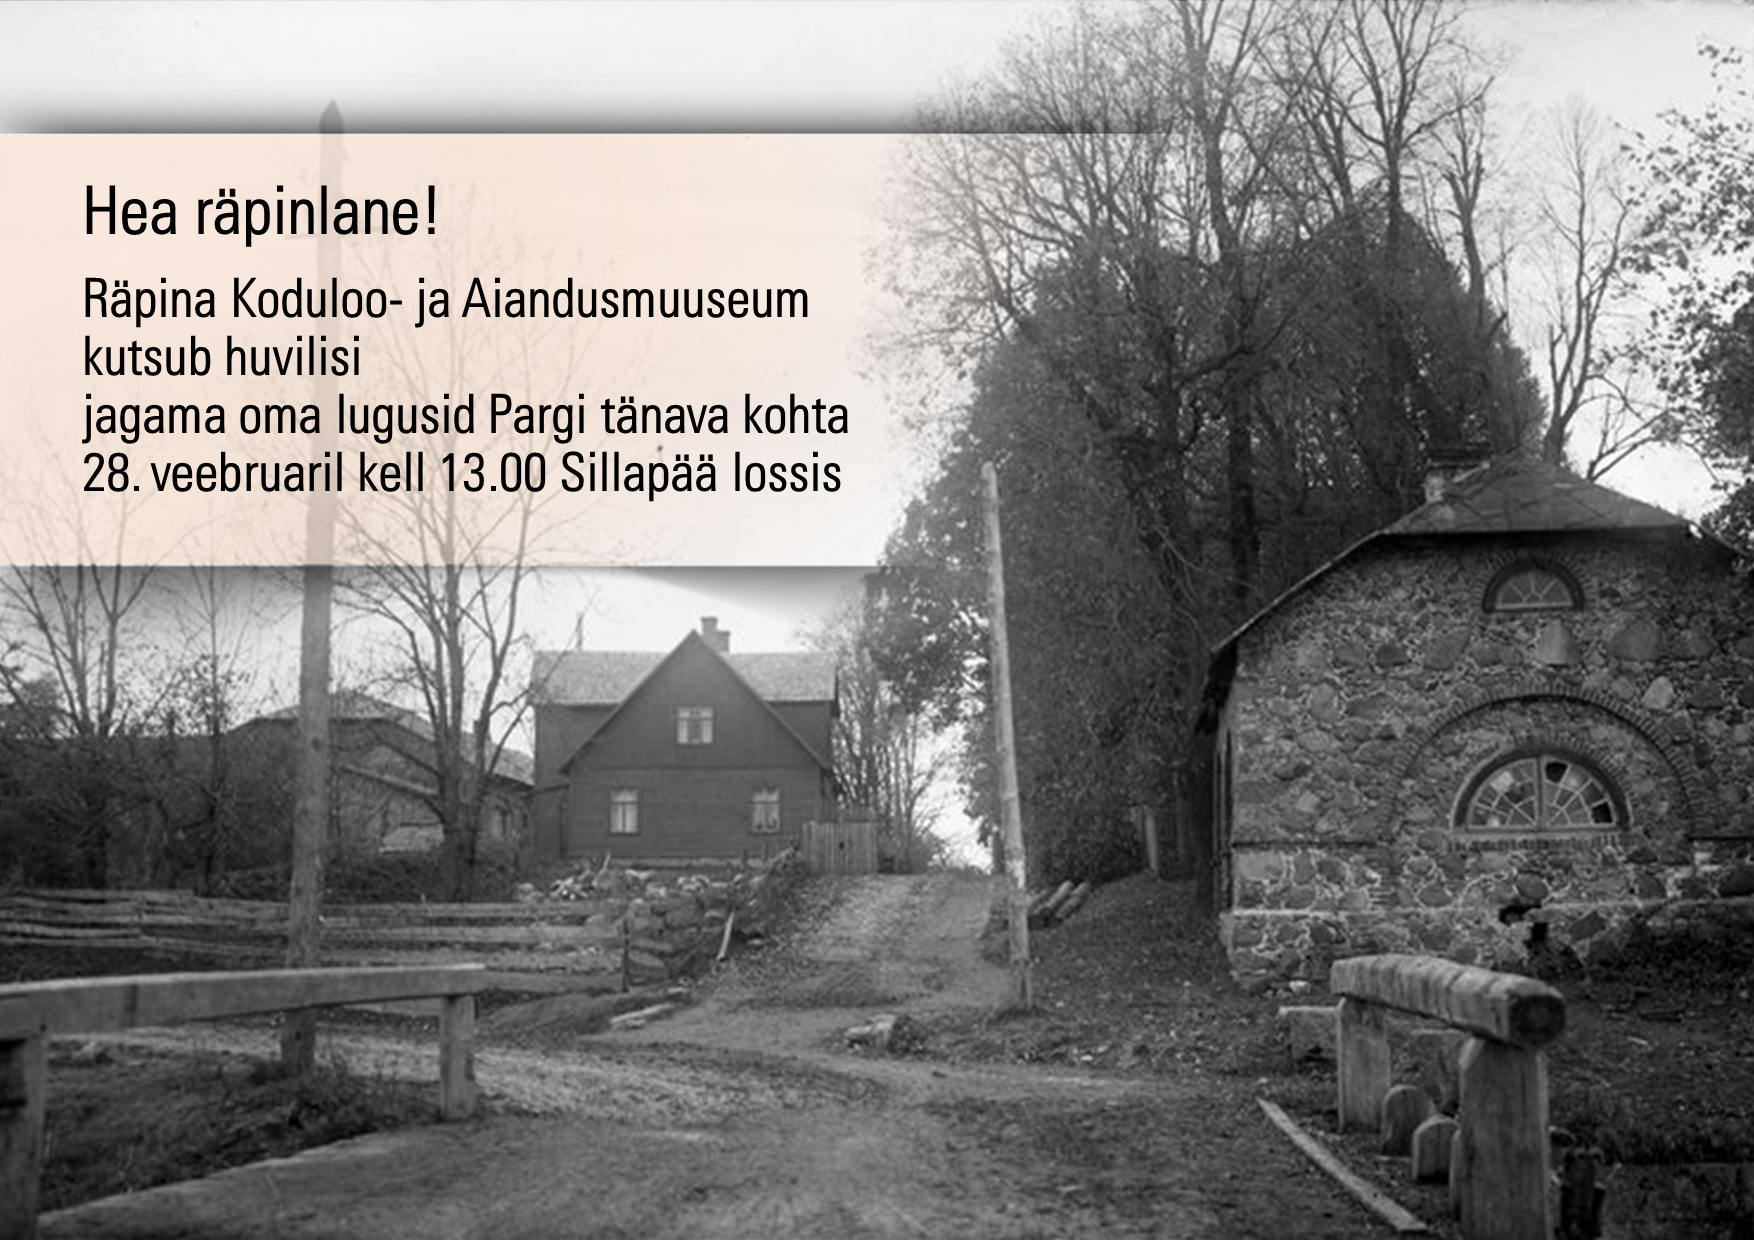 Räpina Koduloo- ja Aiandusmuuseum kutsub huvilisi jagama oma lugusid Pargi tn kohta @ Sillapää loss | Räpina | Põlva maakond | Eesti